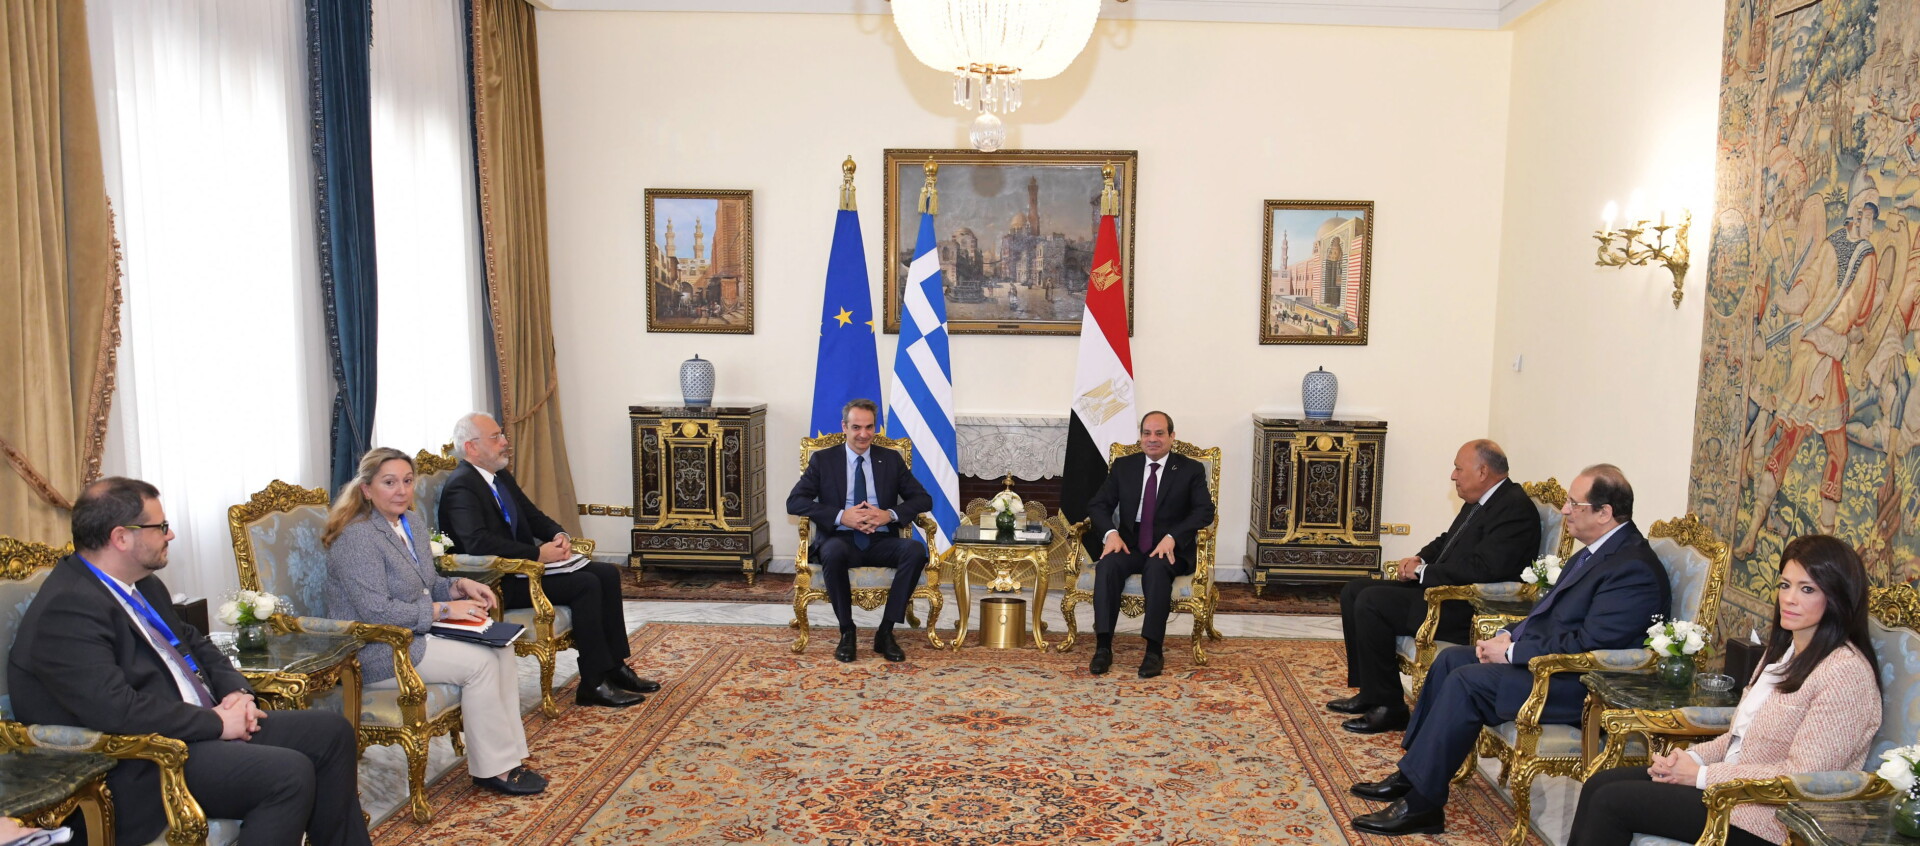 Ο Έλληνας πρωθυπουργός, Κυριάκος Μητσοτάκης και ο Αιγύπτιος πρόεδρος, Αμπντέλ Φατάχ Αλ Σίσι © EPA/EGYPTIAN PRESIDENTIAL OFFICE / HANDOUT